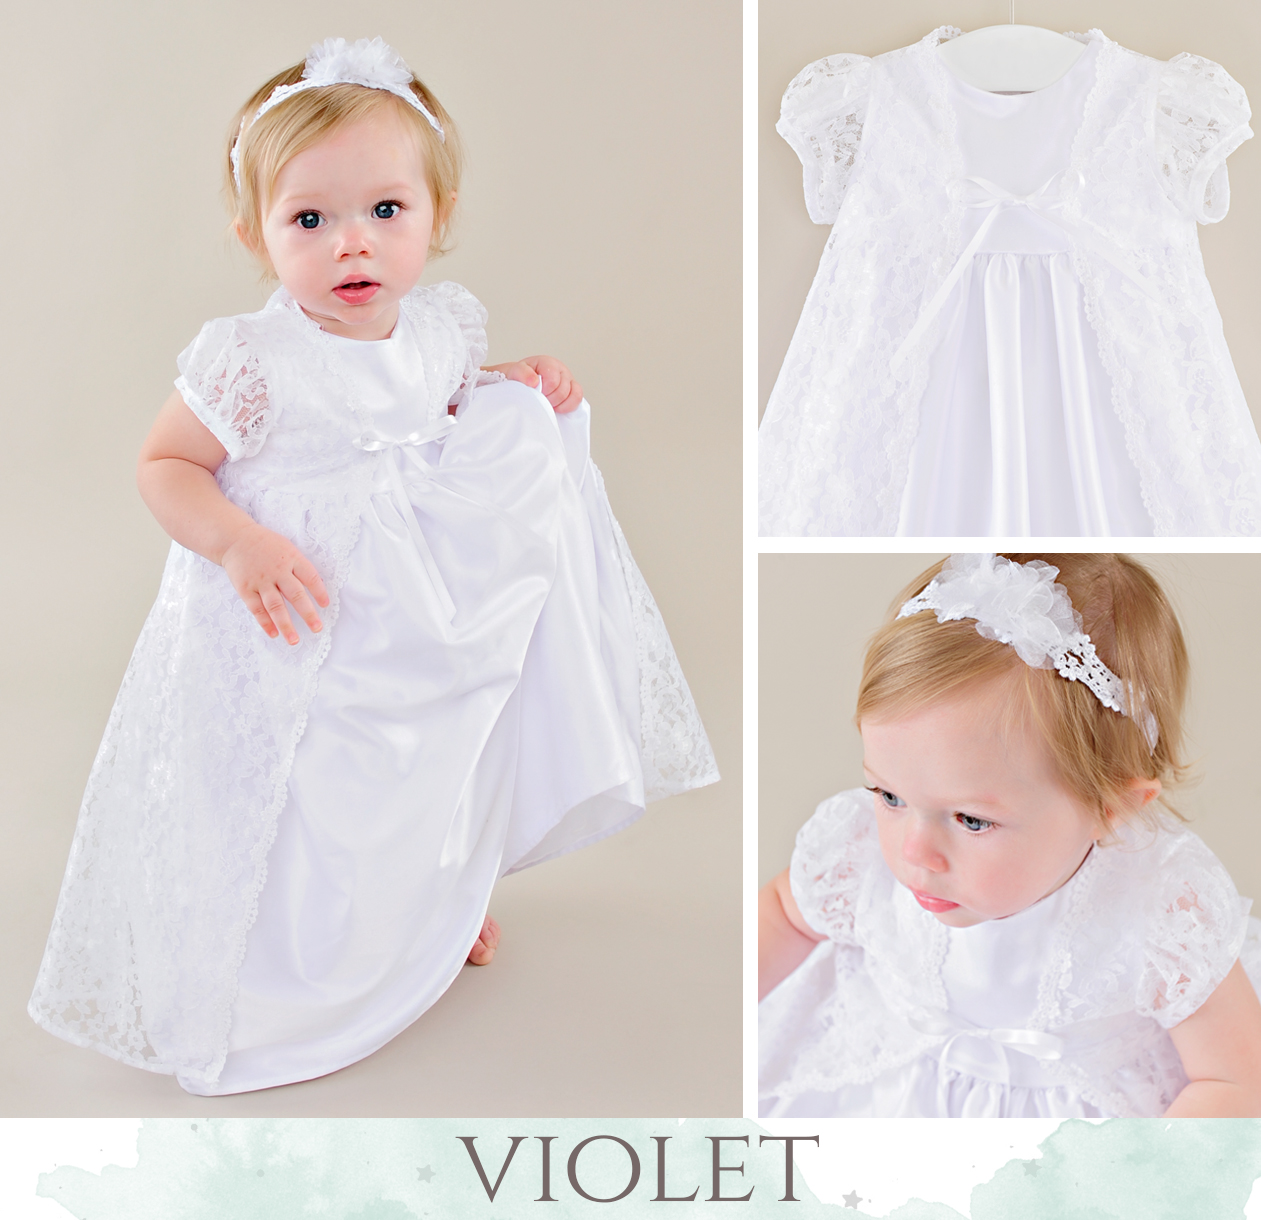 Violet LDS Blessing Dress